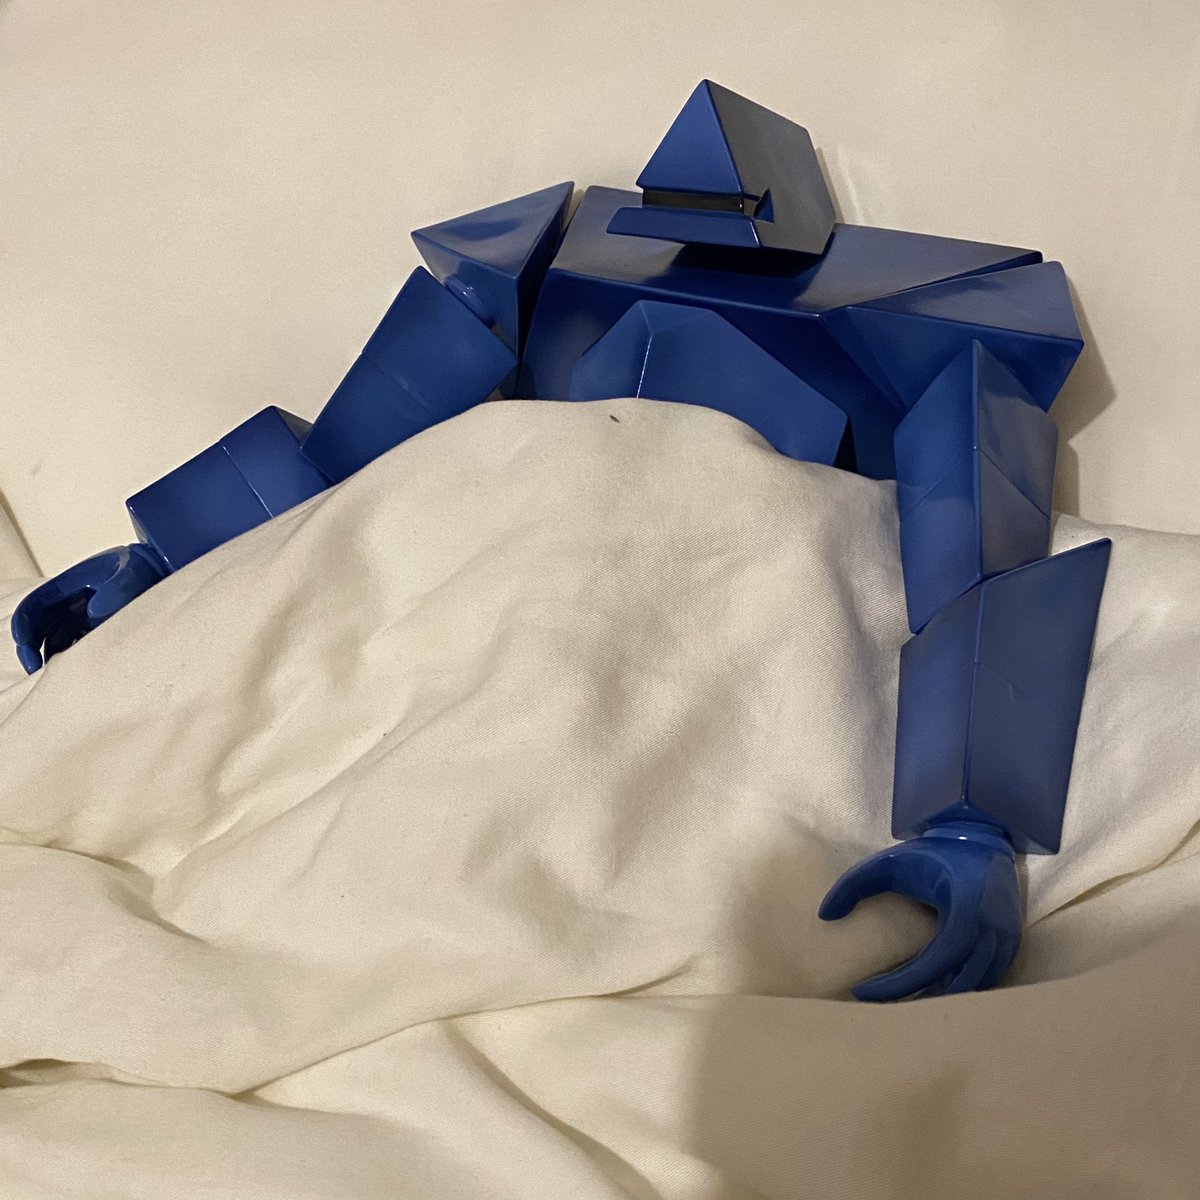 lying on back bed sheet holding hands robot 1other out of frame  illustration images